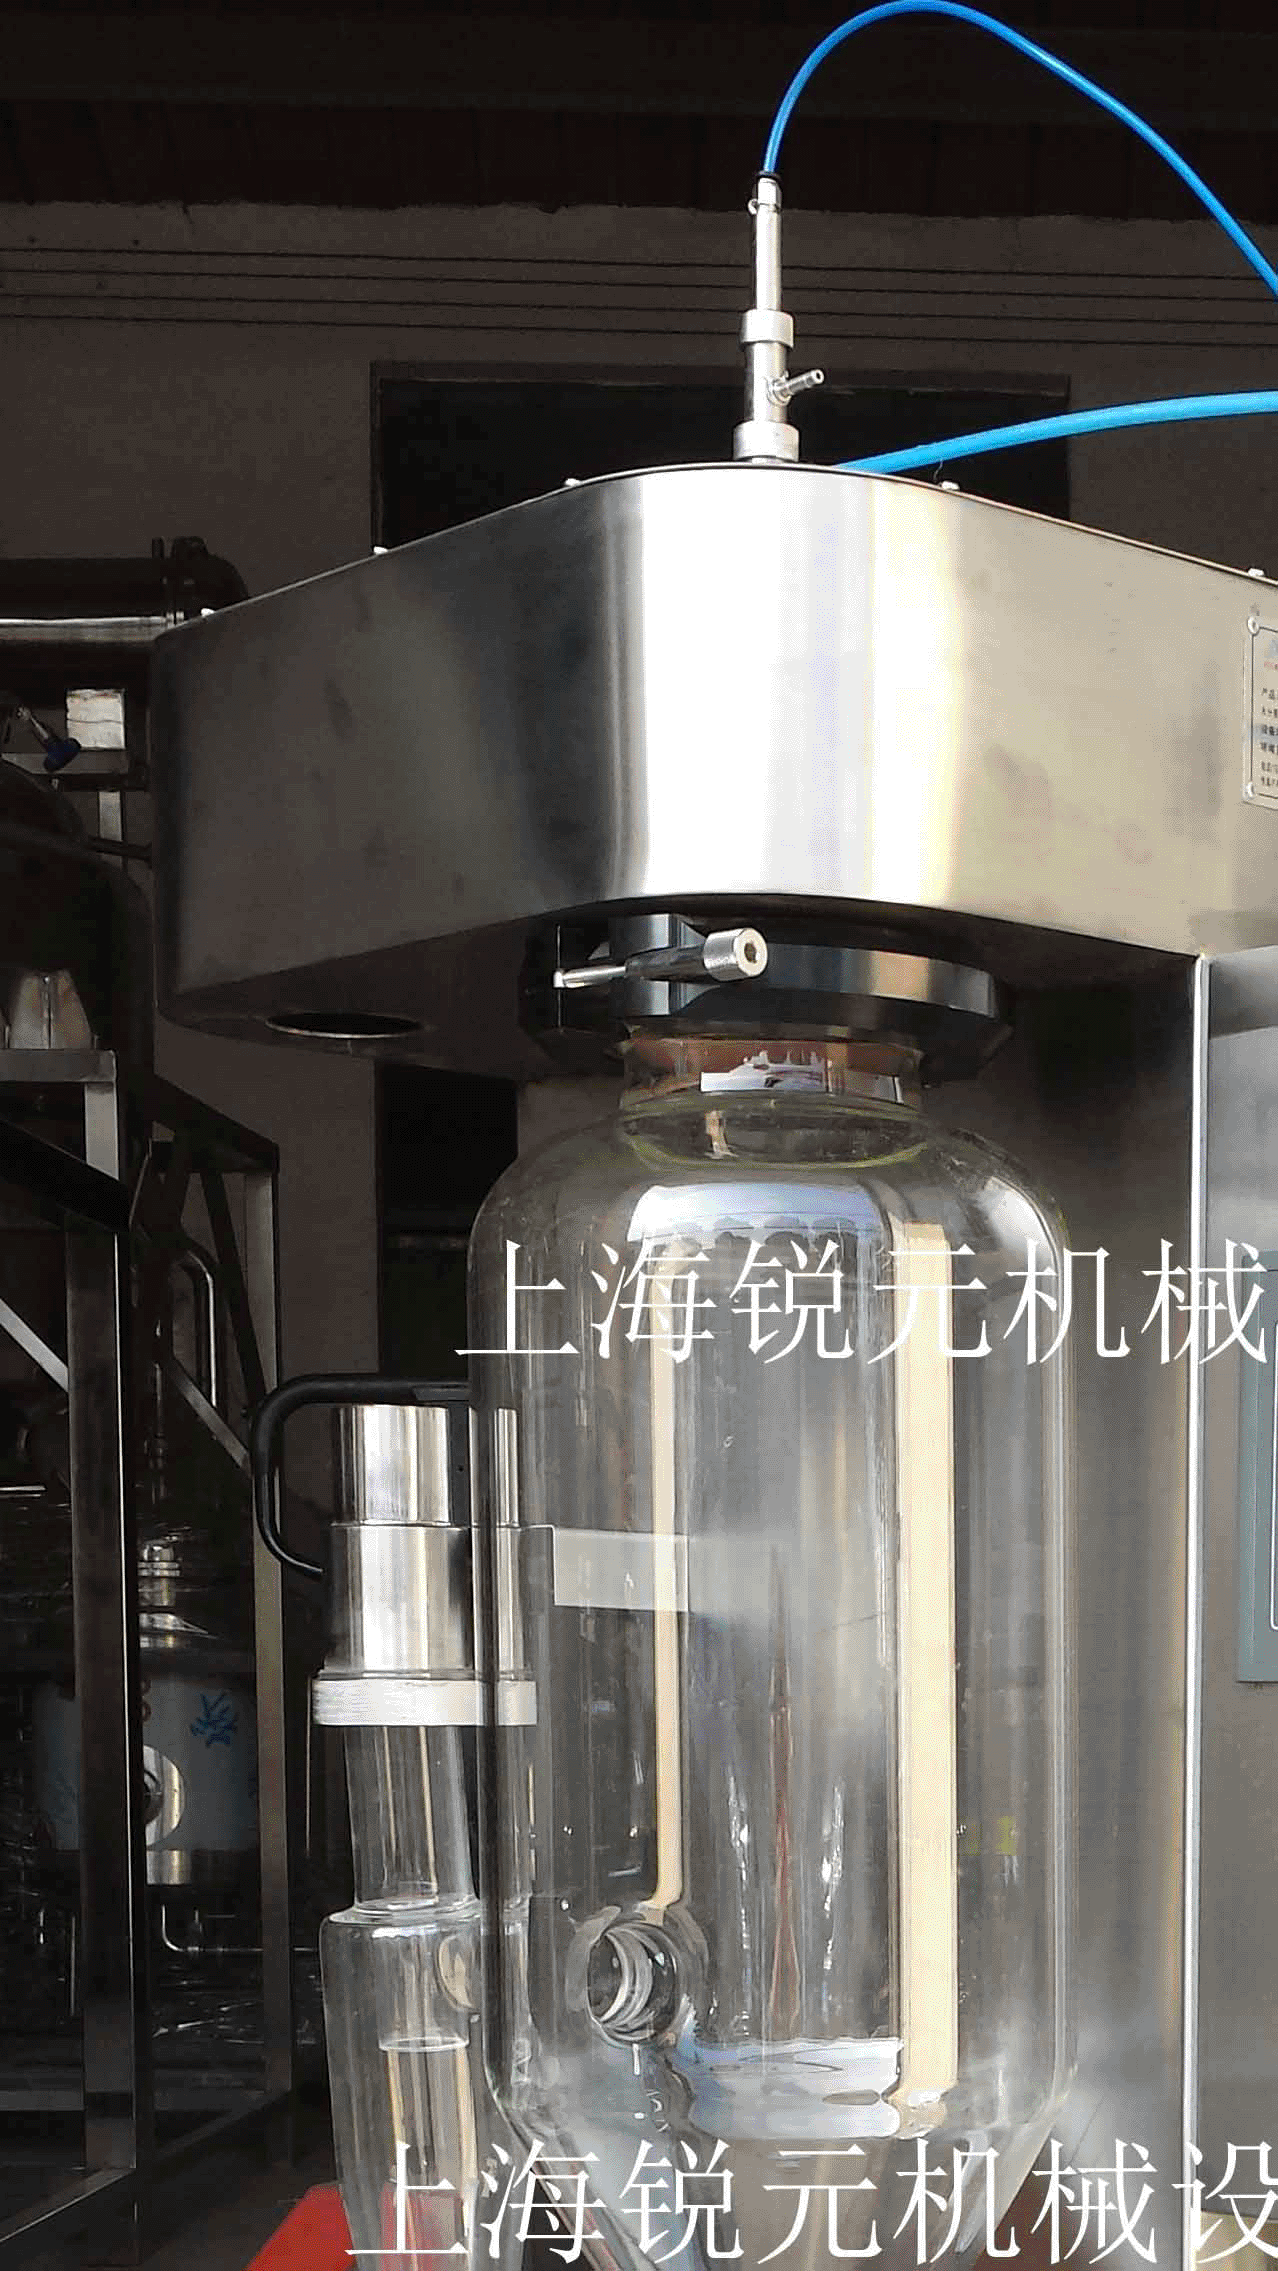 上海市喷雾干燥机厂家2017款★实验型喷雾干燥机/实验室用喷雾干燥机